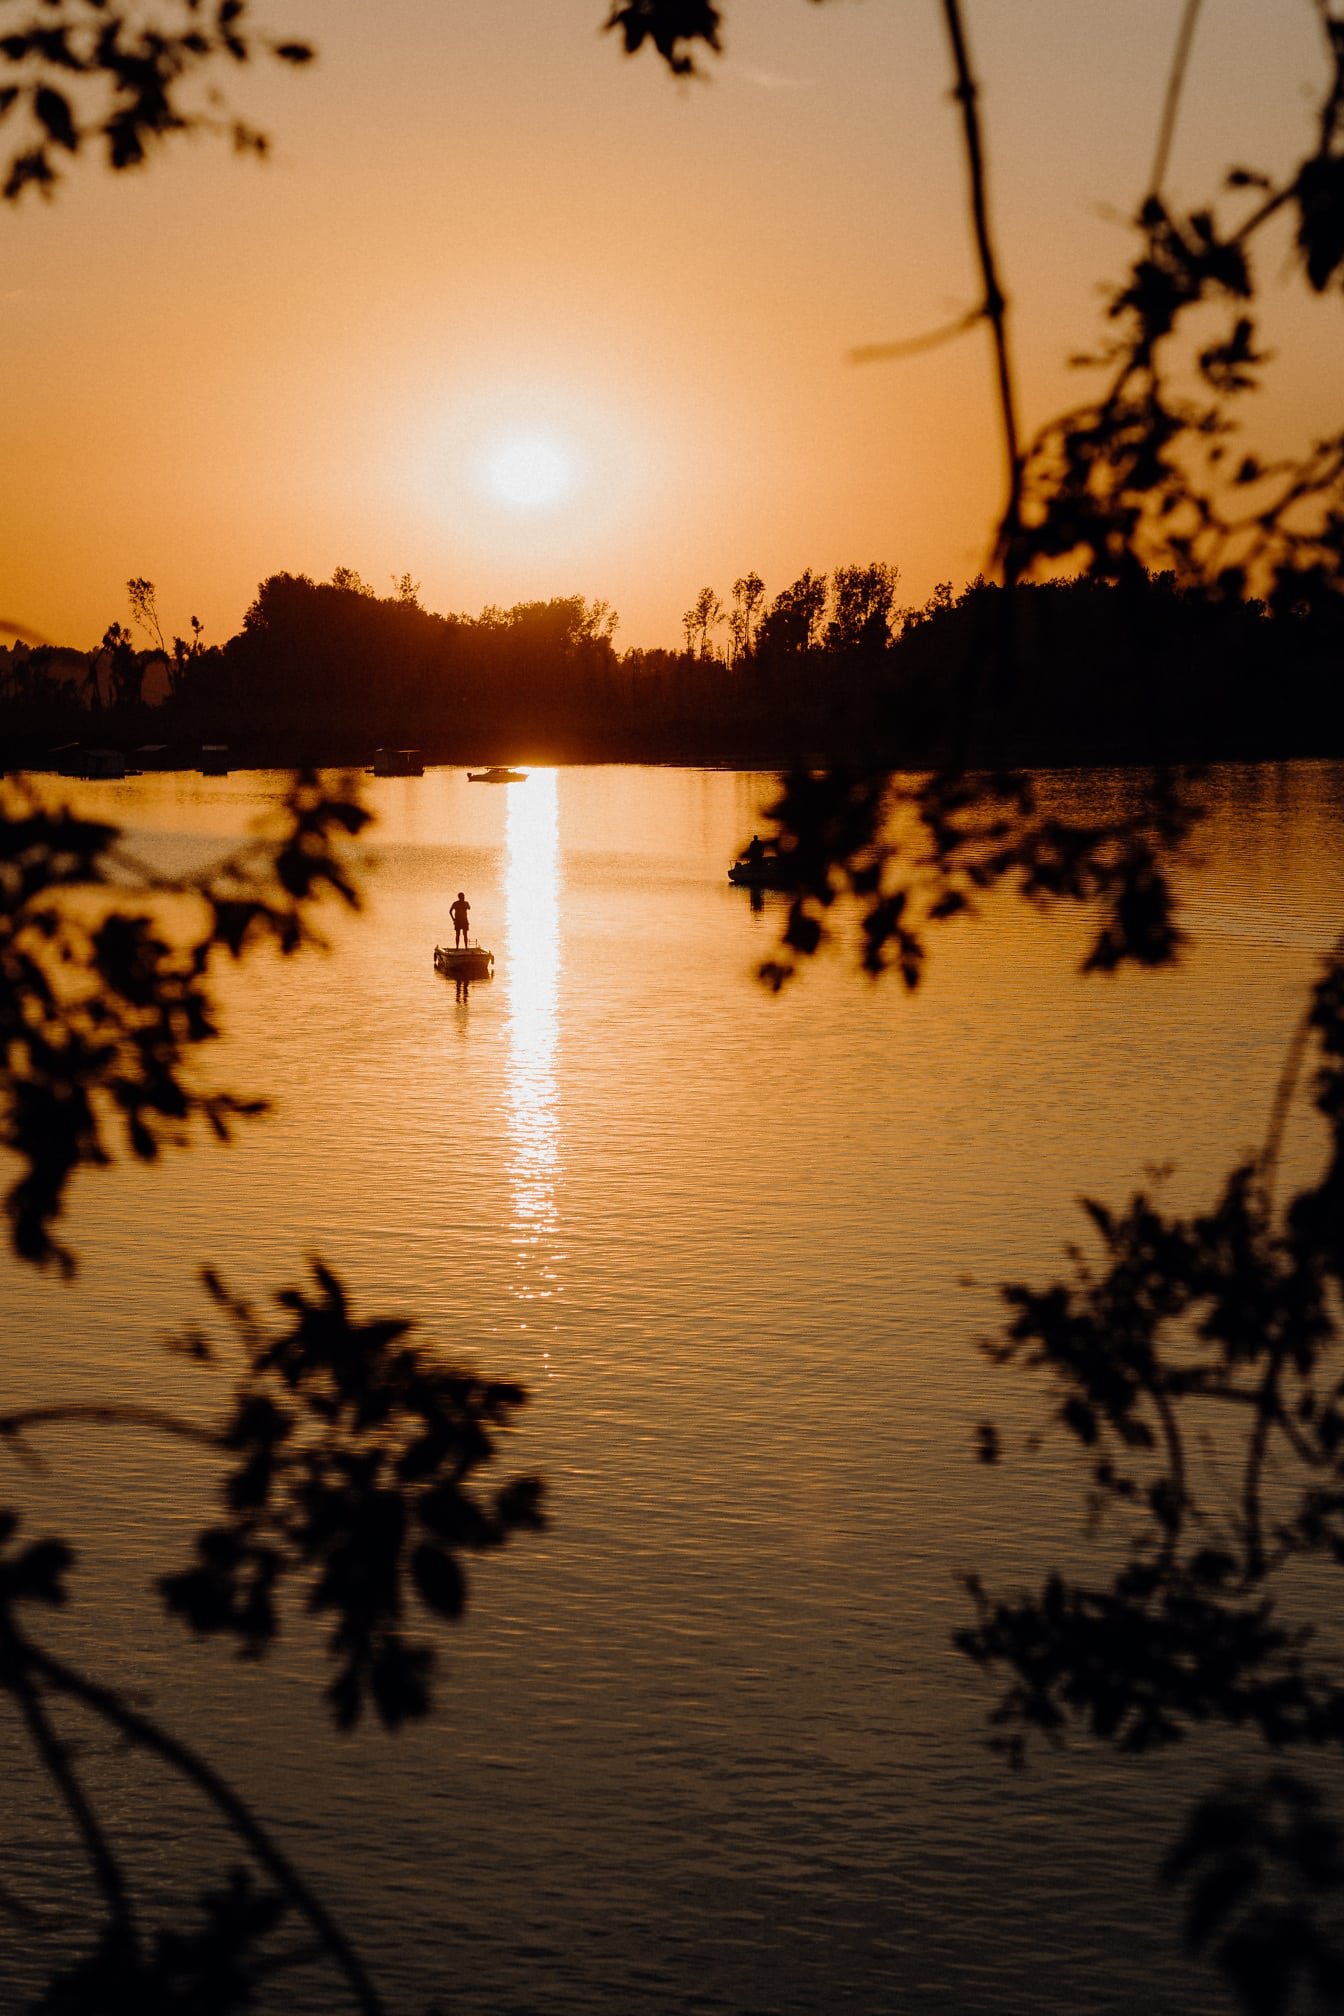 ภาพเงาของชาวประมงยืนอยู่ในเรือประมงในพระอาทิตย์ตกสีส้มเหลือง